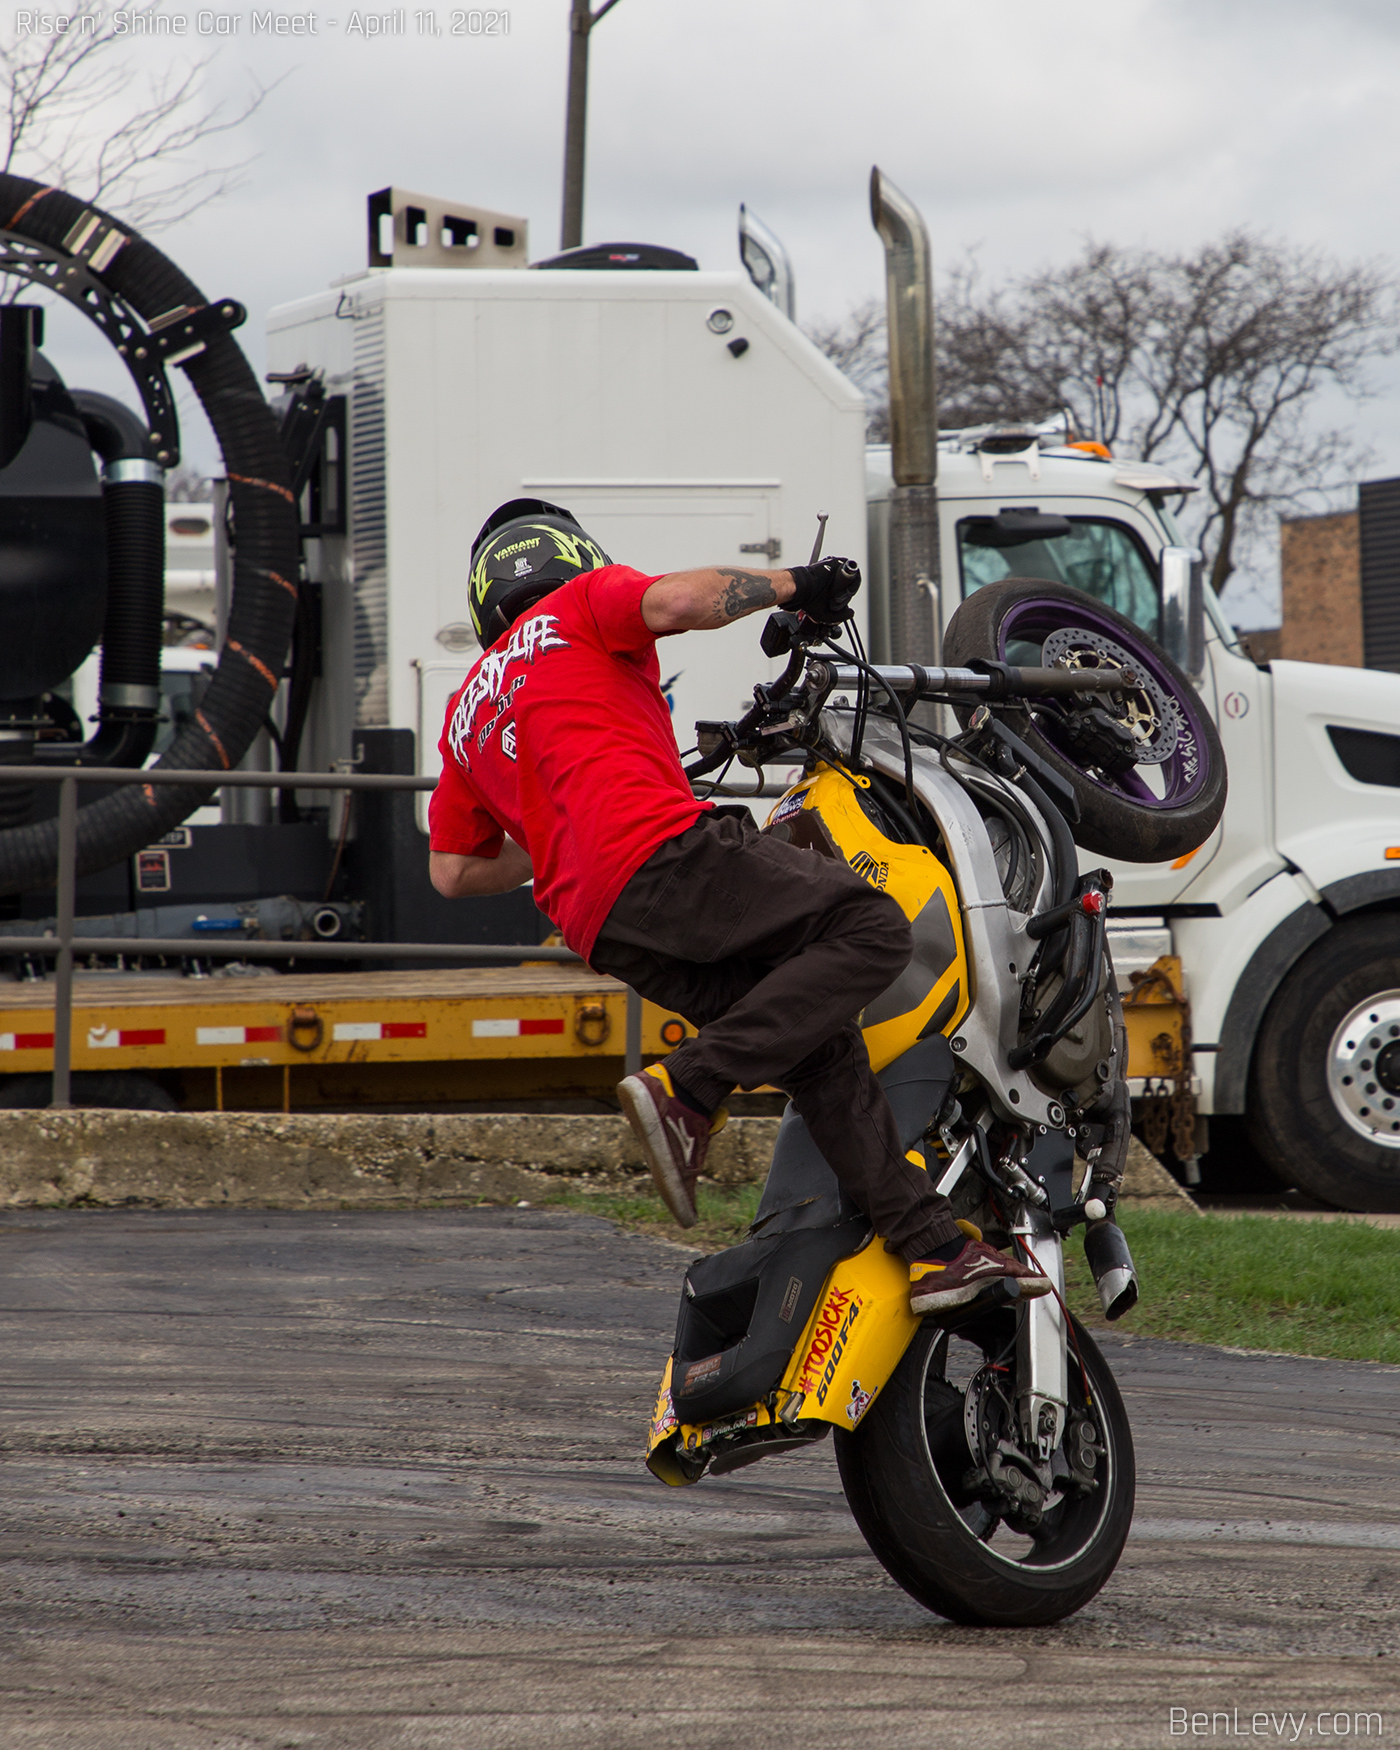 Justin Performing a Stunt on a Honda CBR 600F4i